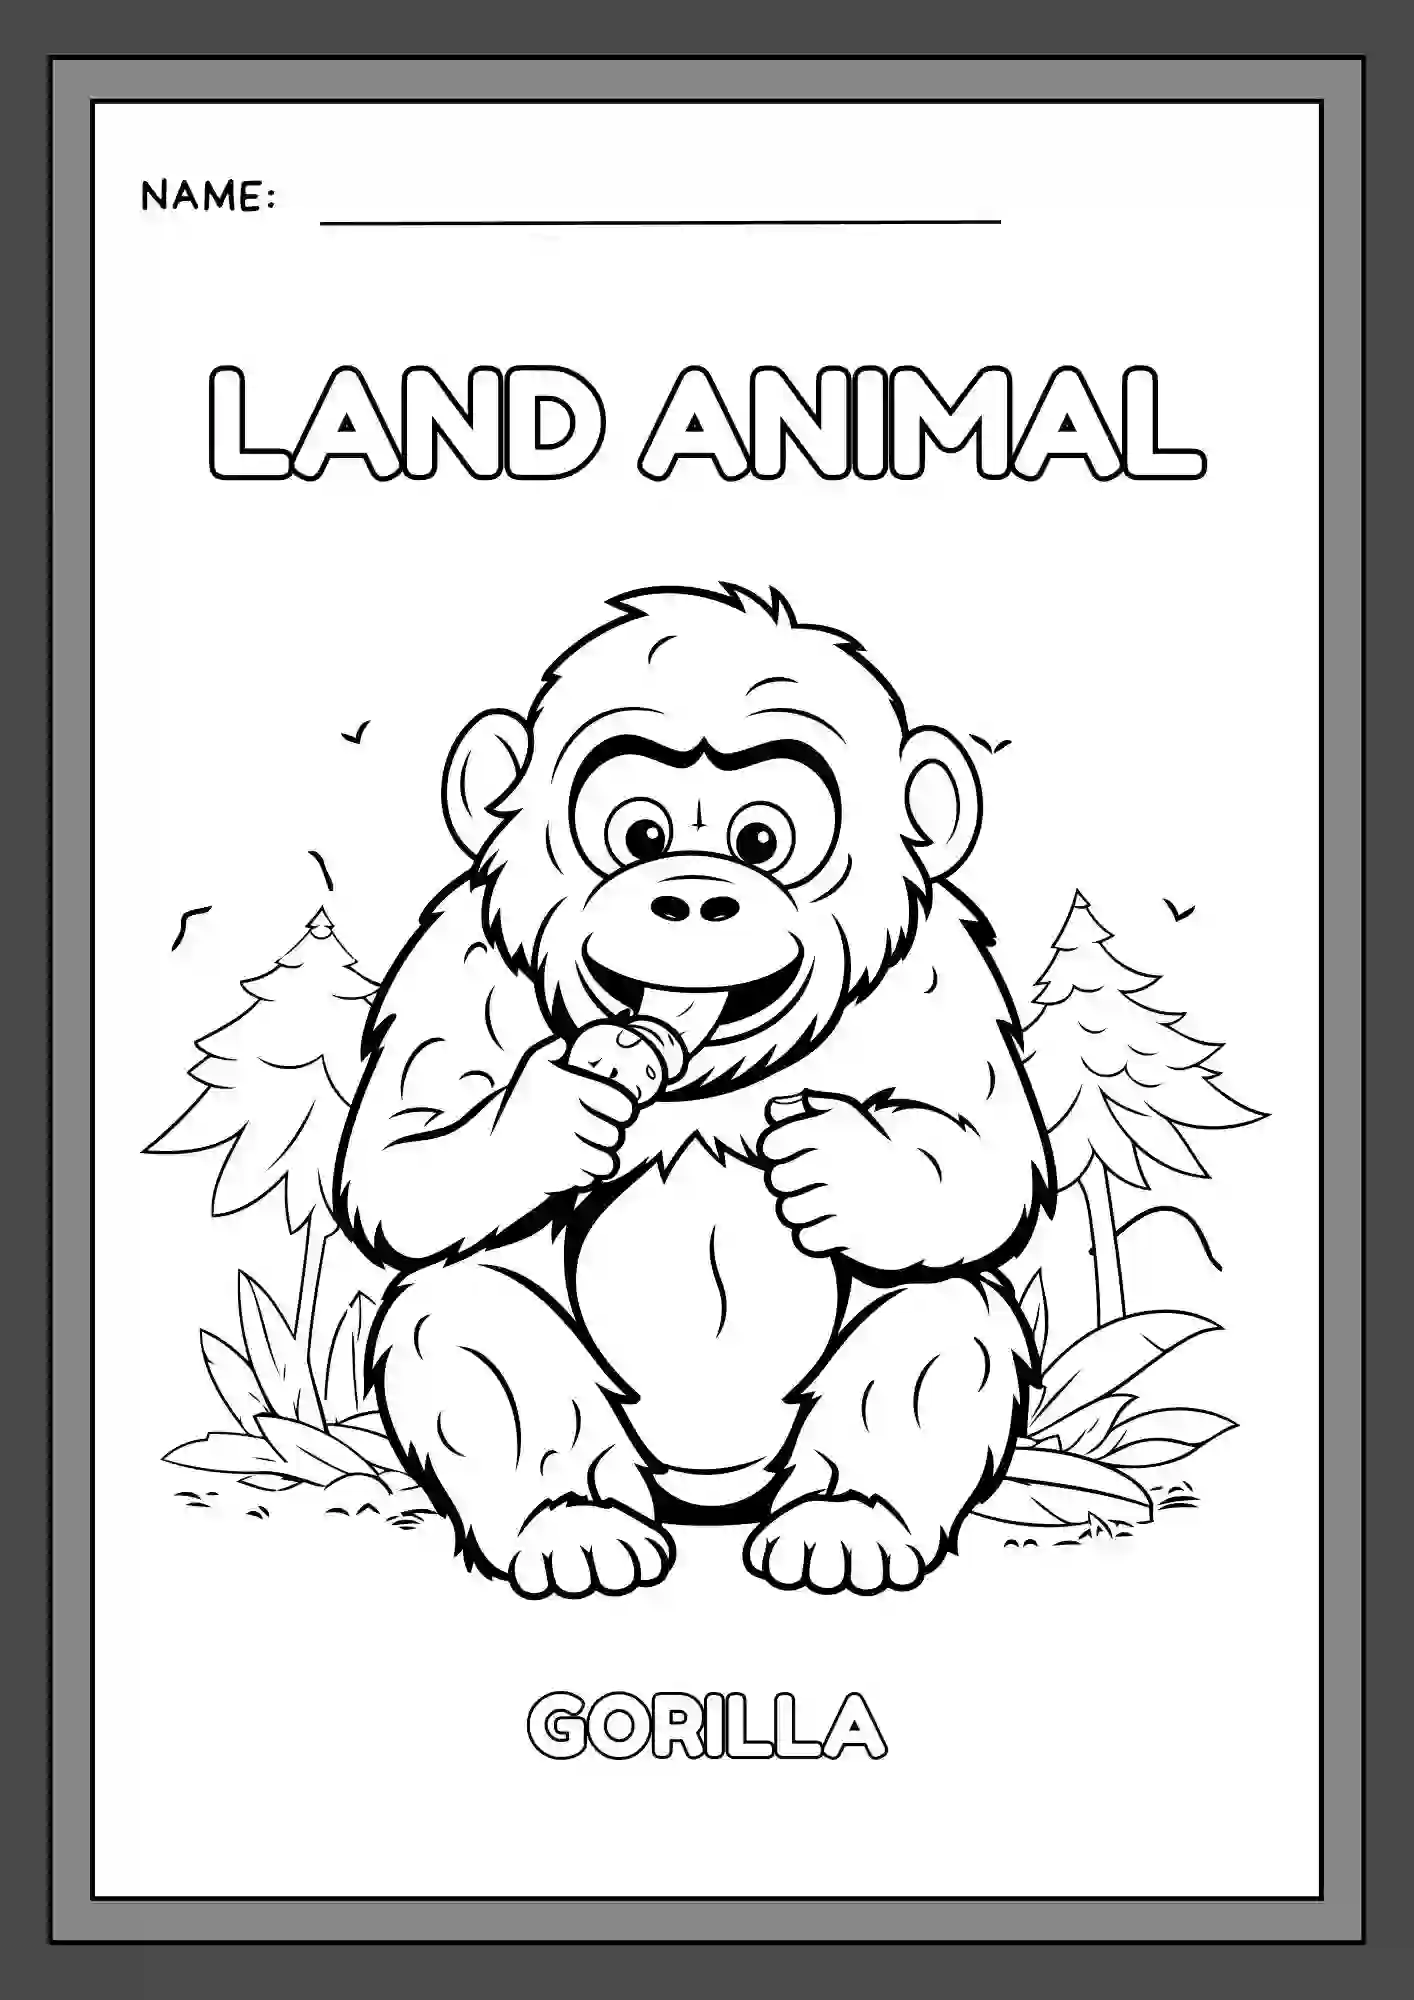 Land Animals Coloring Worksheets For Kindergarten Lkg & Ukg (gorilla)